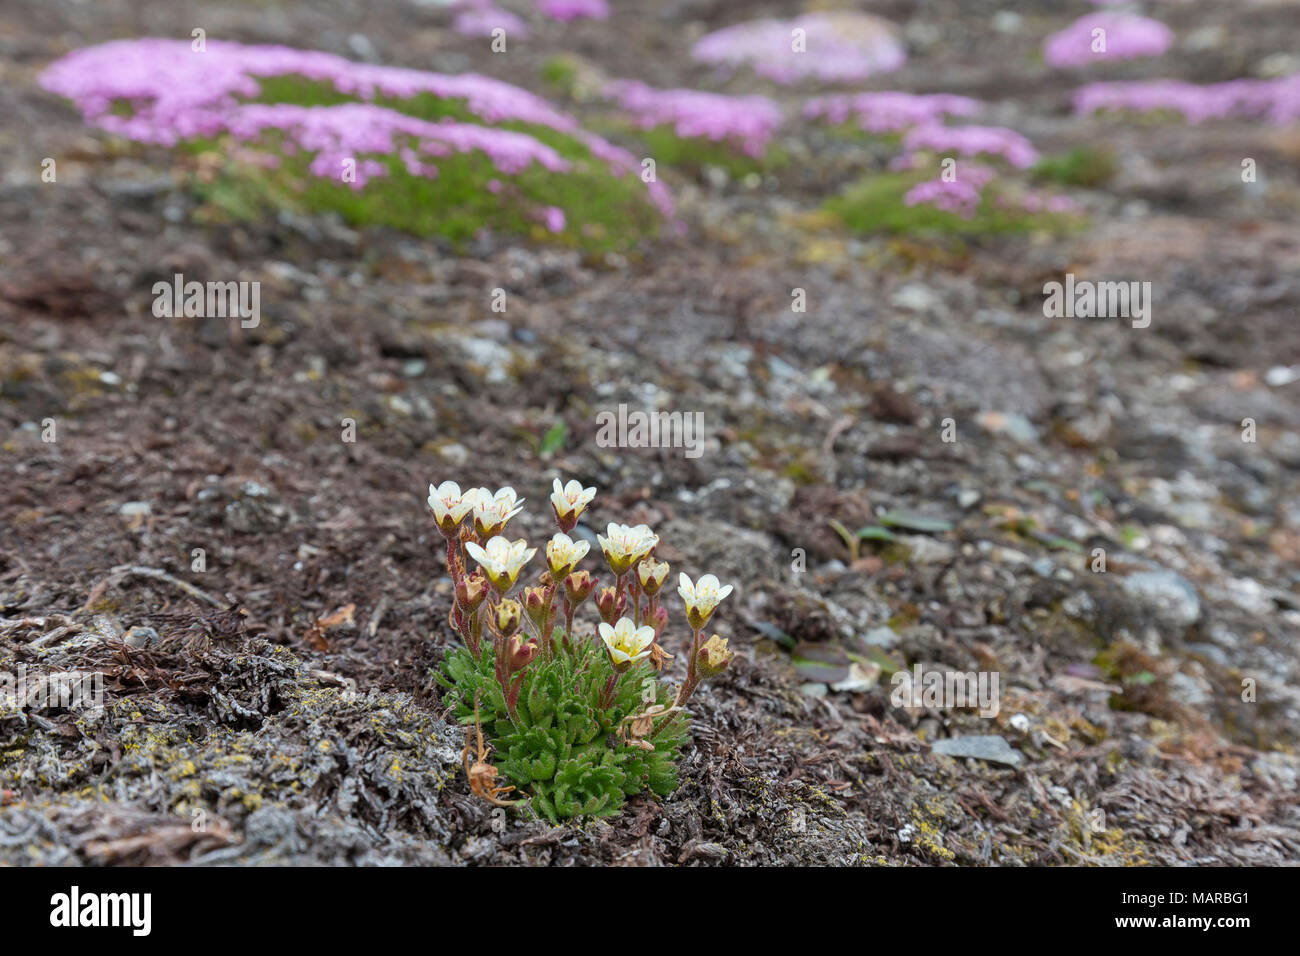 Saxifrage alpin touffetées, le Saxifrage à feuilles opposées (Saxifraga cespitosa) et de coussin Rose, silène acaule (Silene acaulis) floraison dans la toundra. Svalbard Banque D'Images